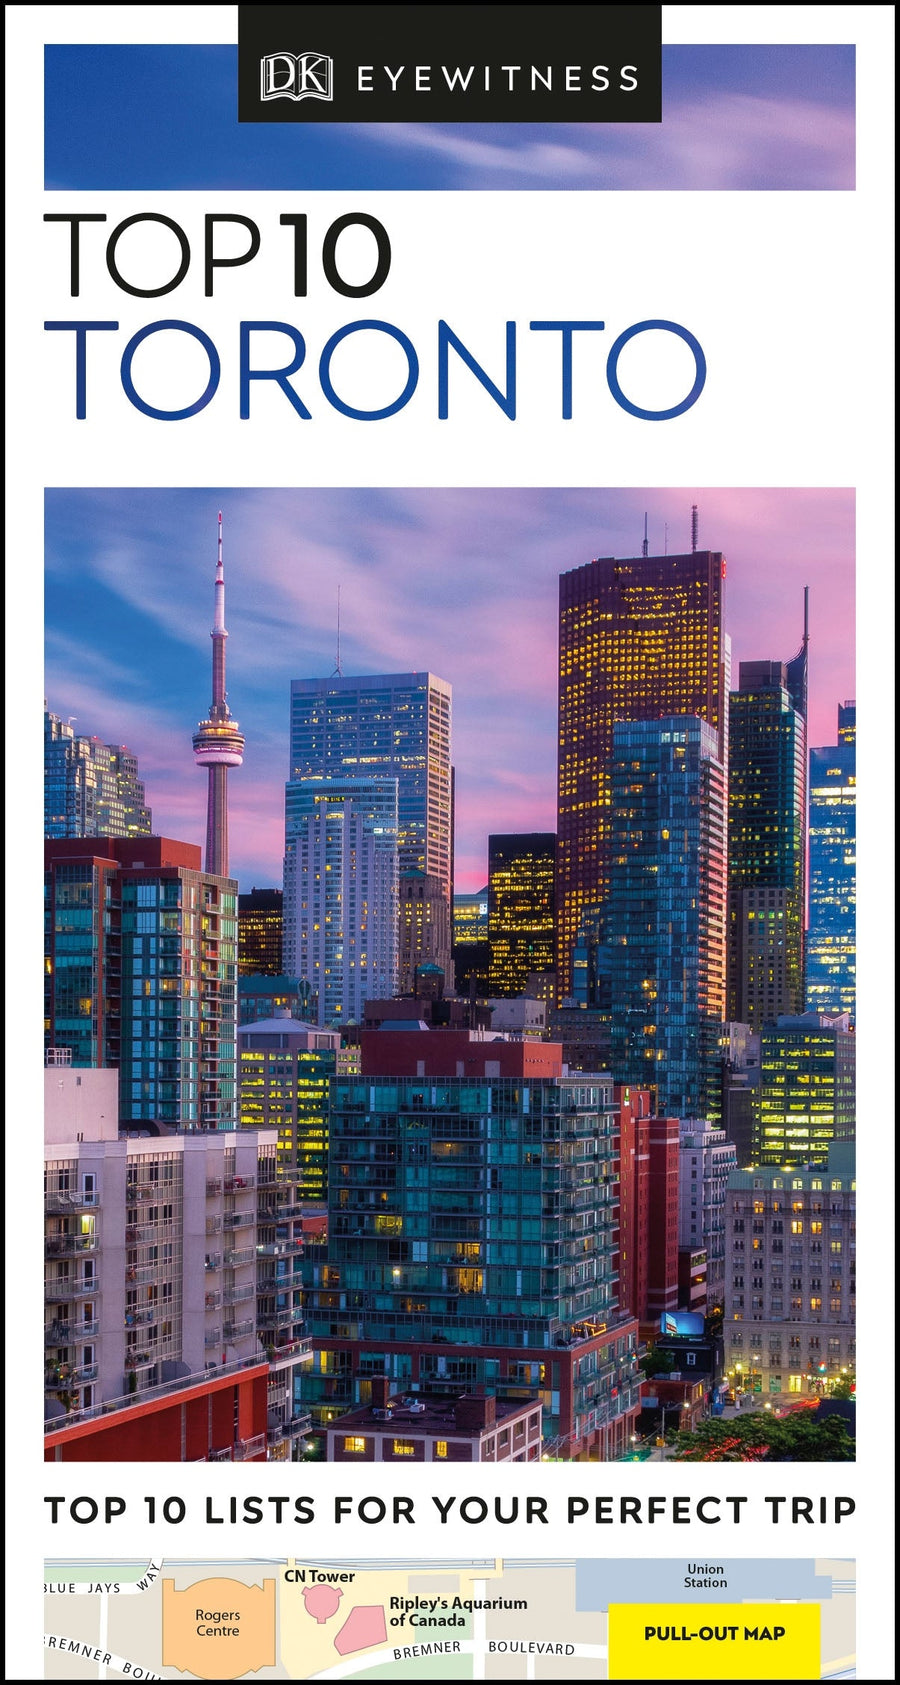 Guide de voyage (en anglais) - Toronto Top 10 | Eyewitness guide de voyage Eyewitness 